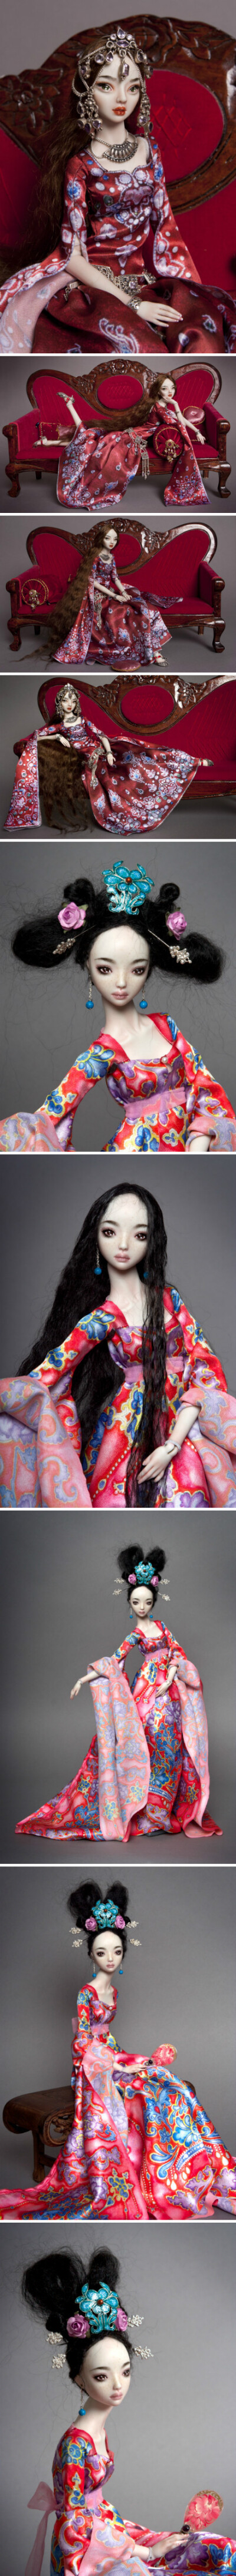 Enchanted Doll中间黑发那个还是散着发吧。。。。。。编起来吓死爹